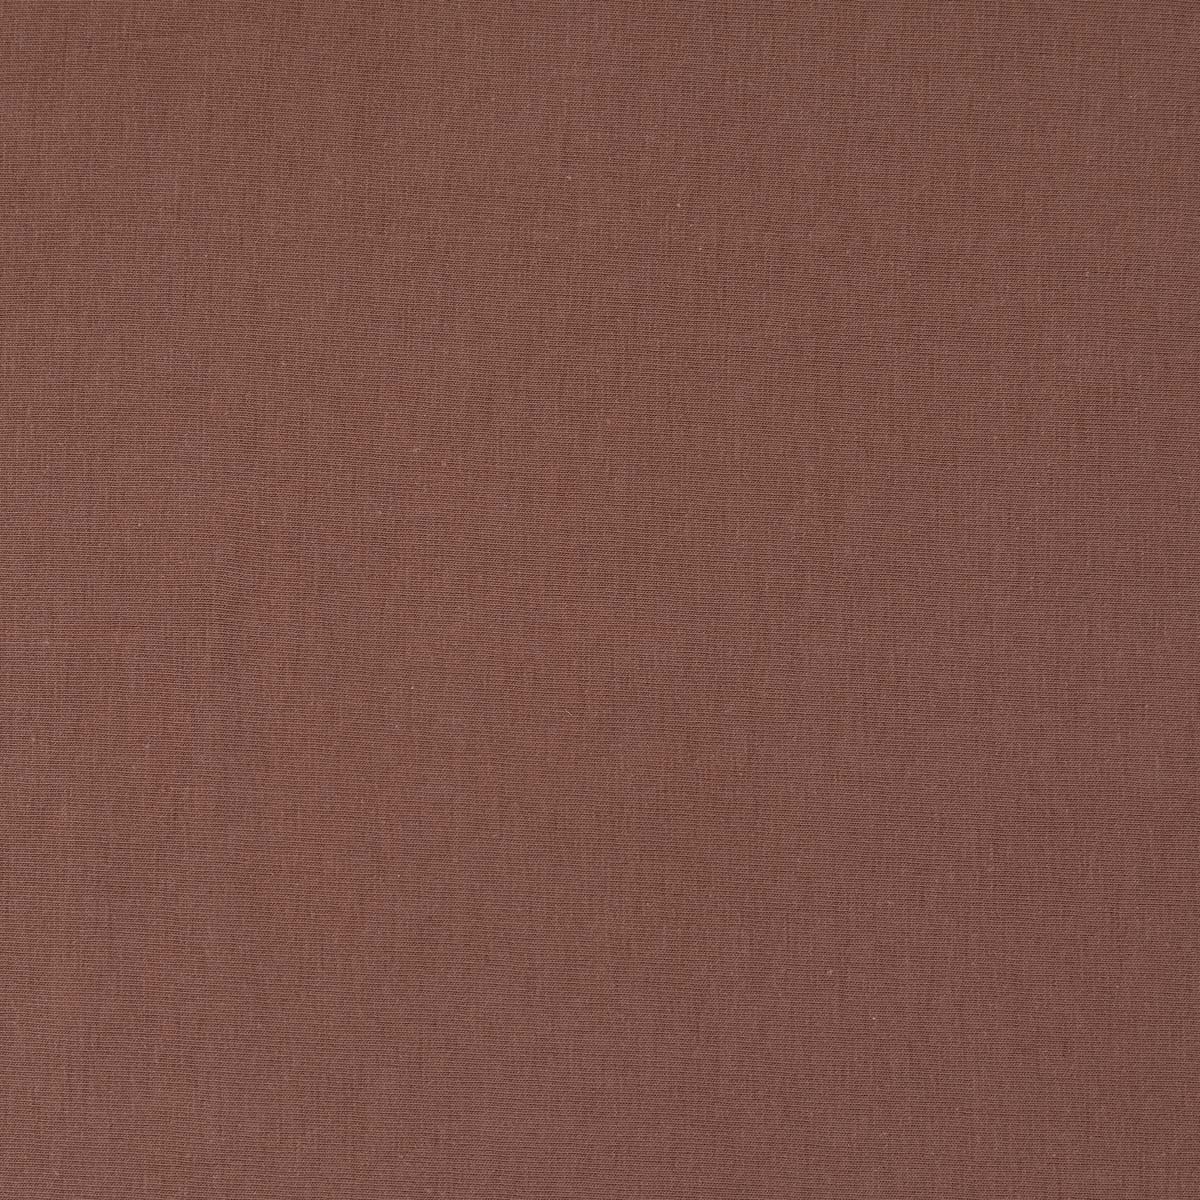 Простыня натяжная 1,5-спальная Pappel 160x220см, цвет коричневый Pappel 160220-35/Braun 160220-35/Braun - фото 2